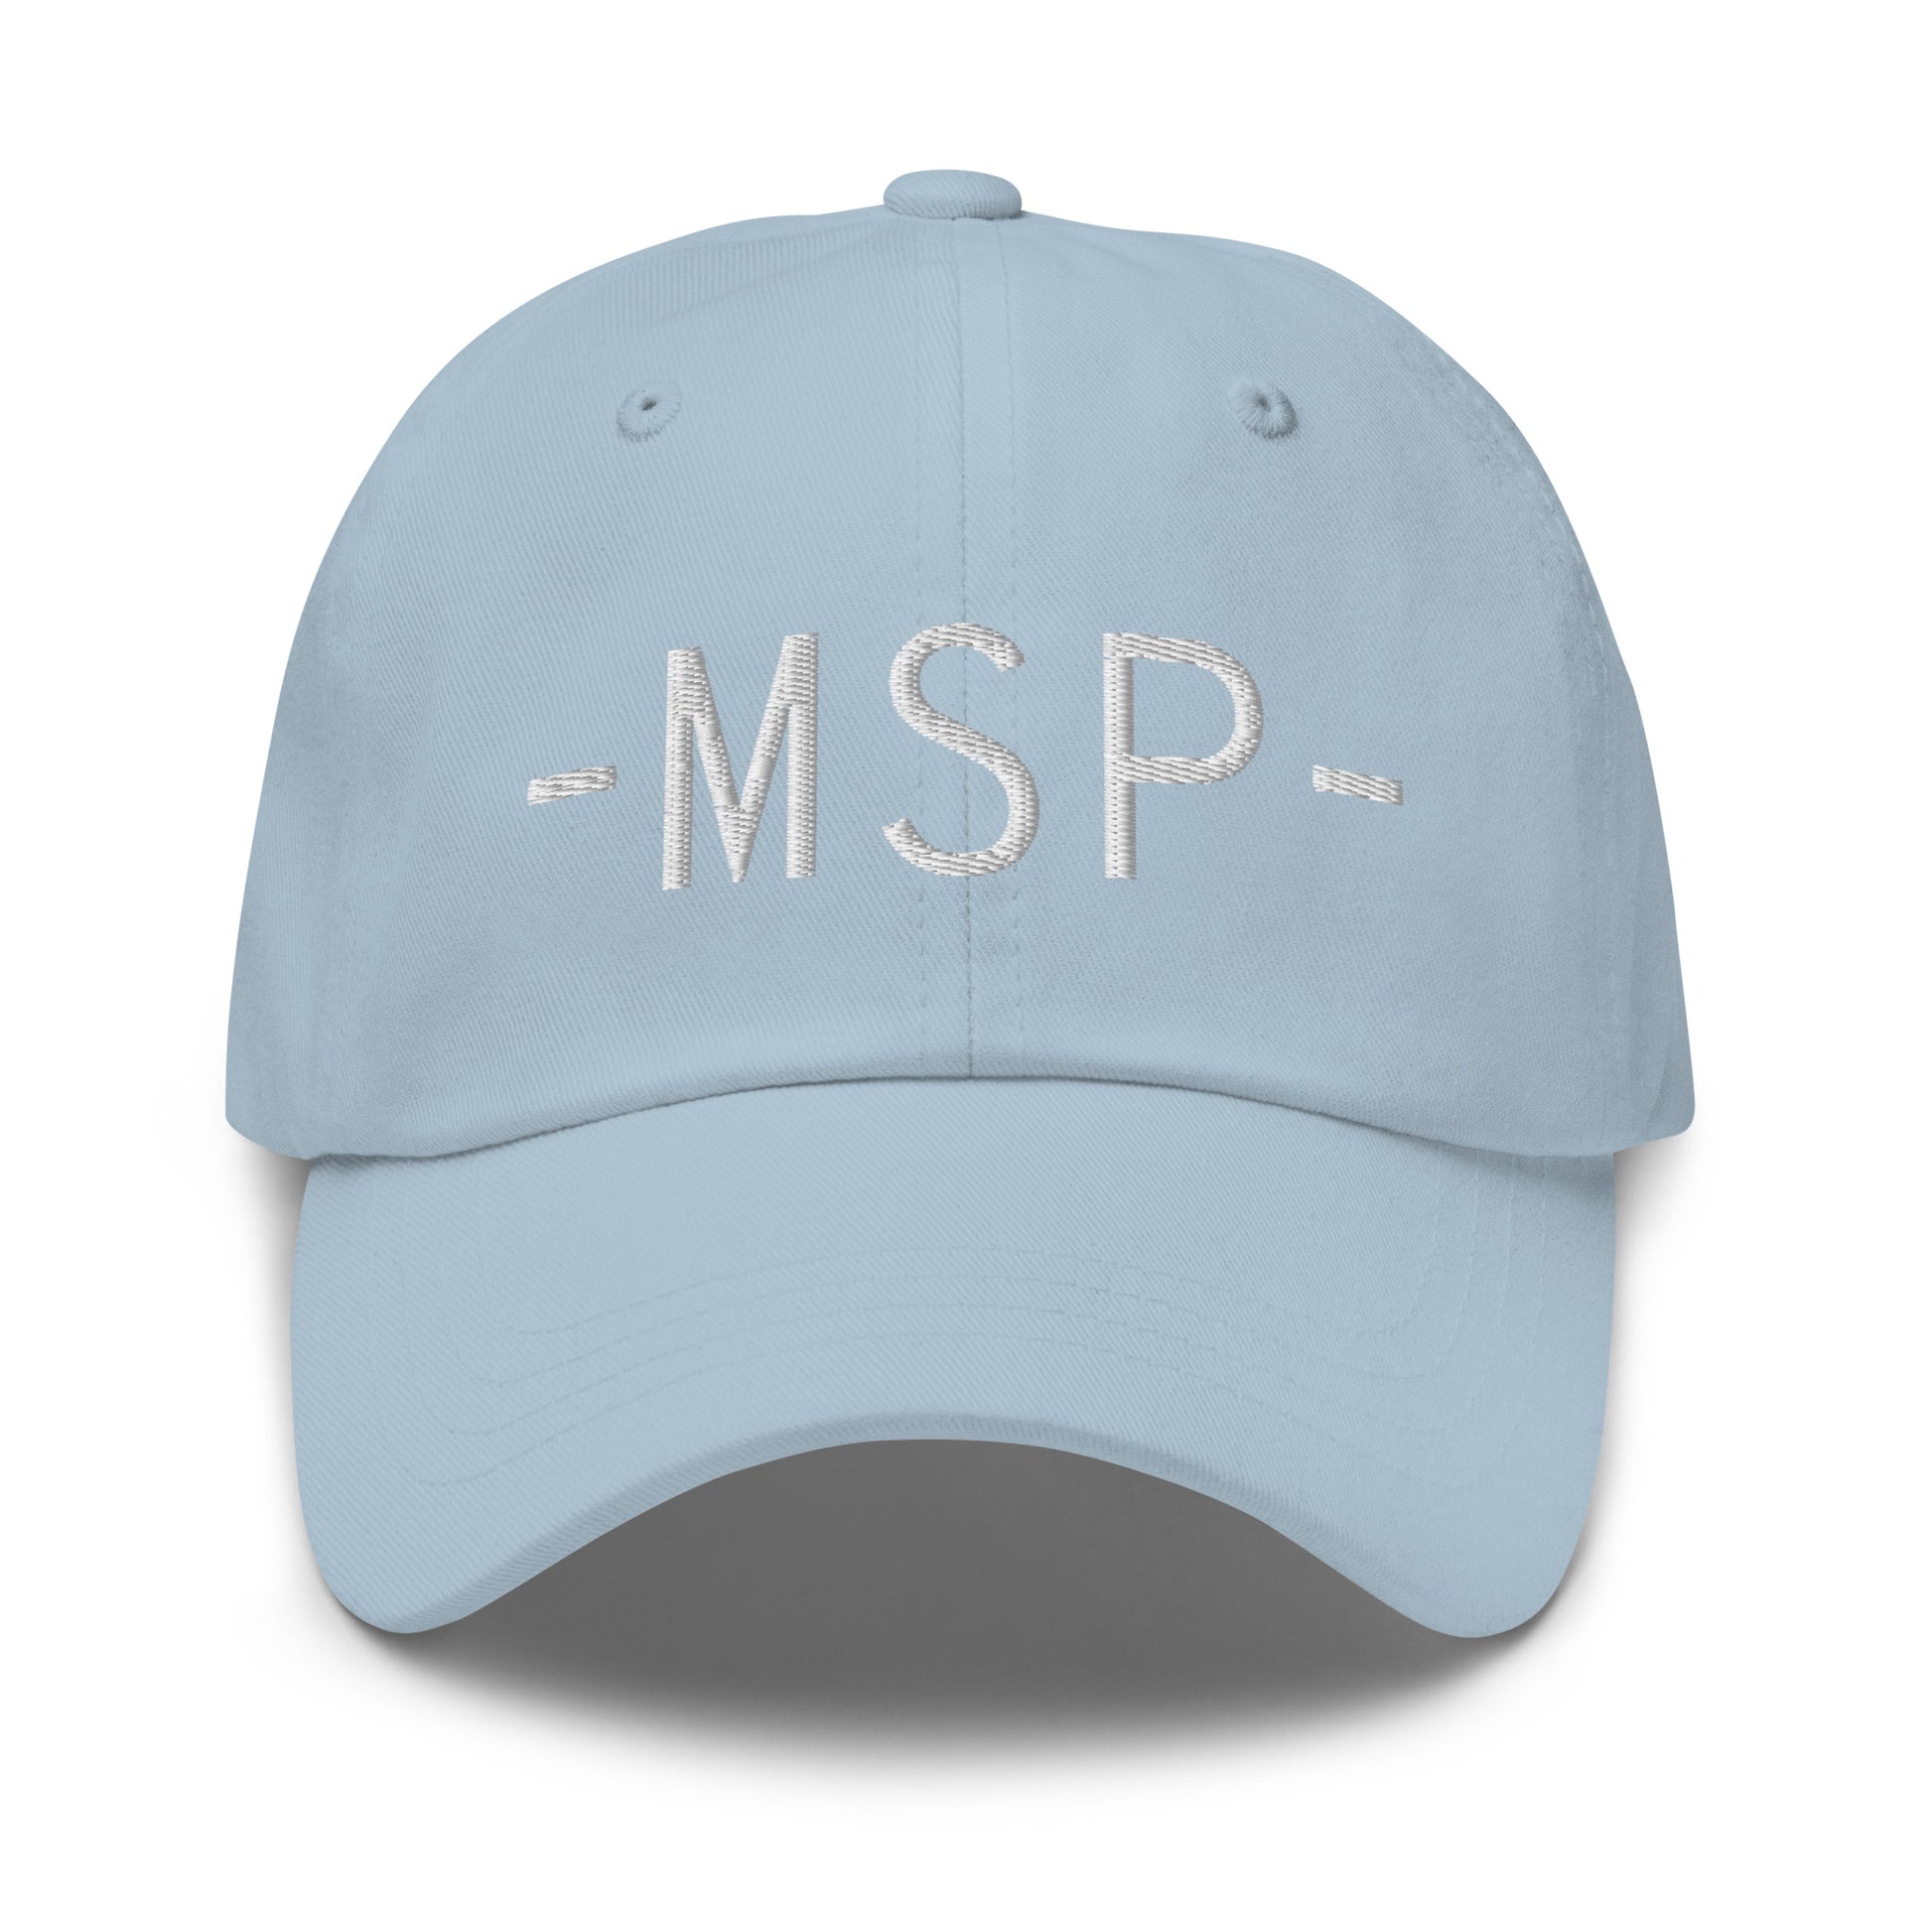 Souvenir Baseball Cap - White • MSP Minneapolis • YHM Designs - Image 27